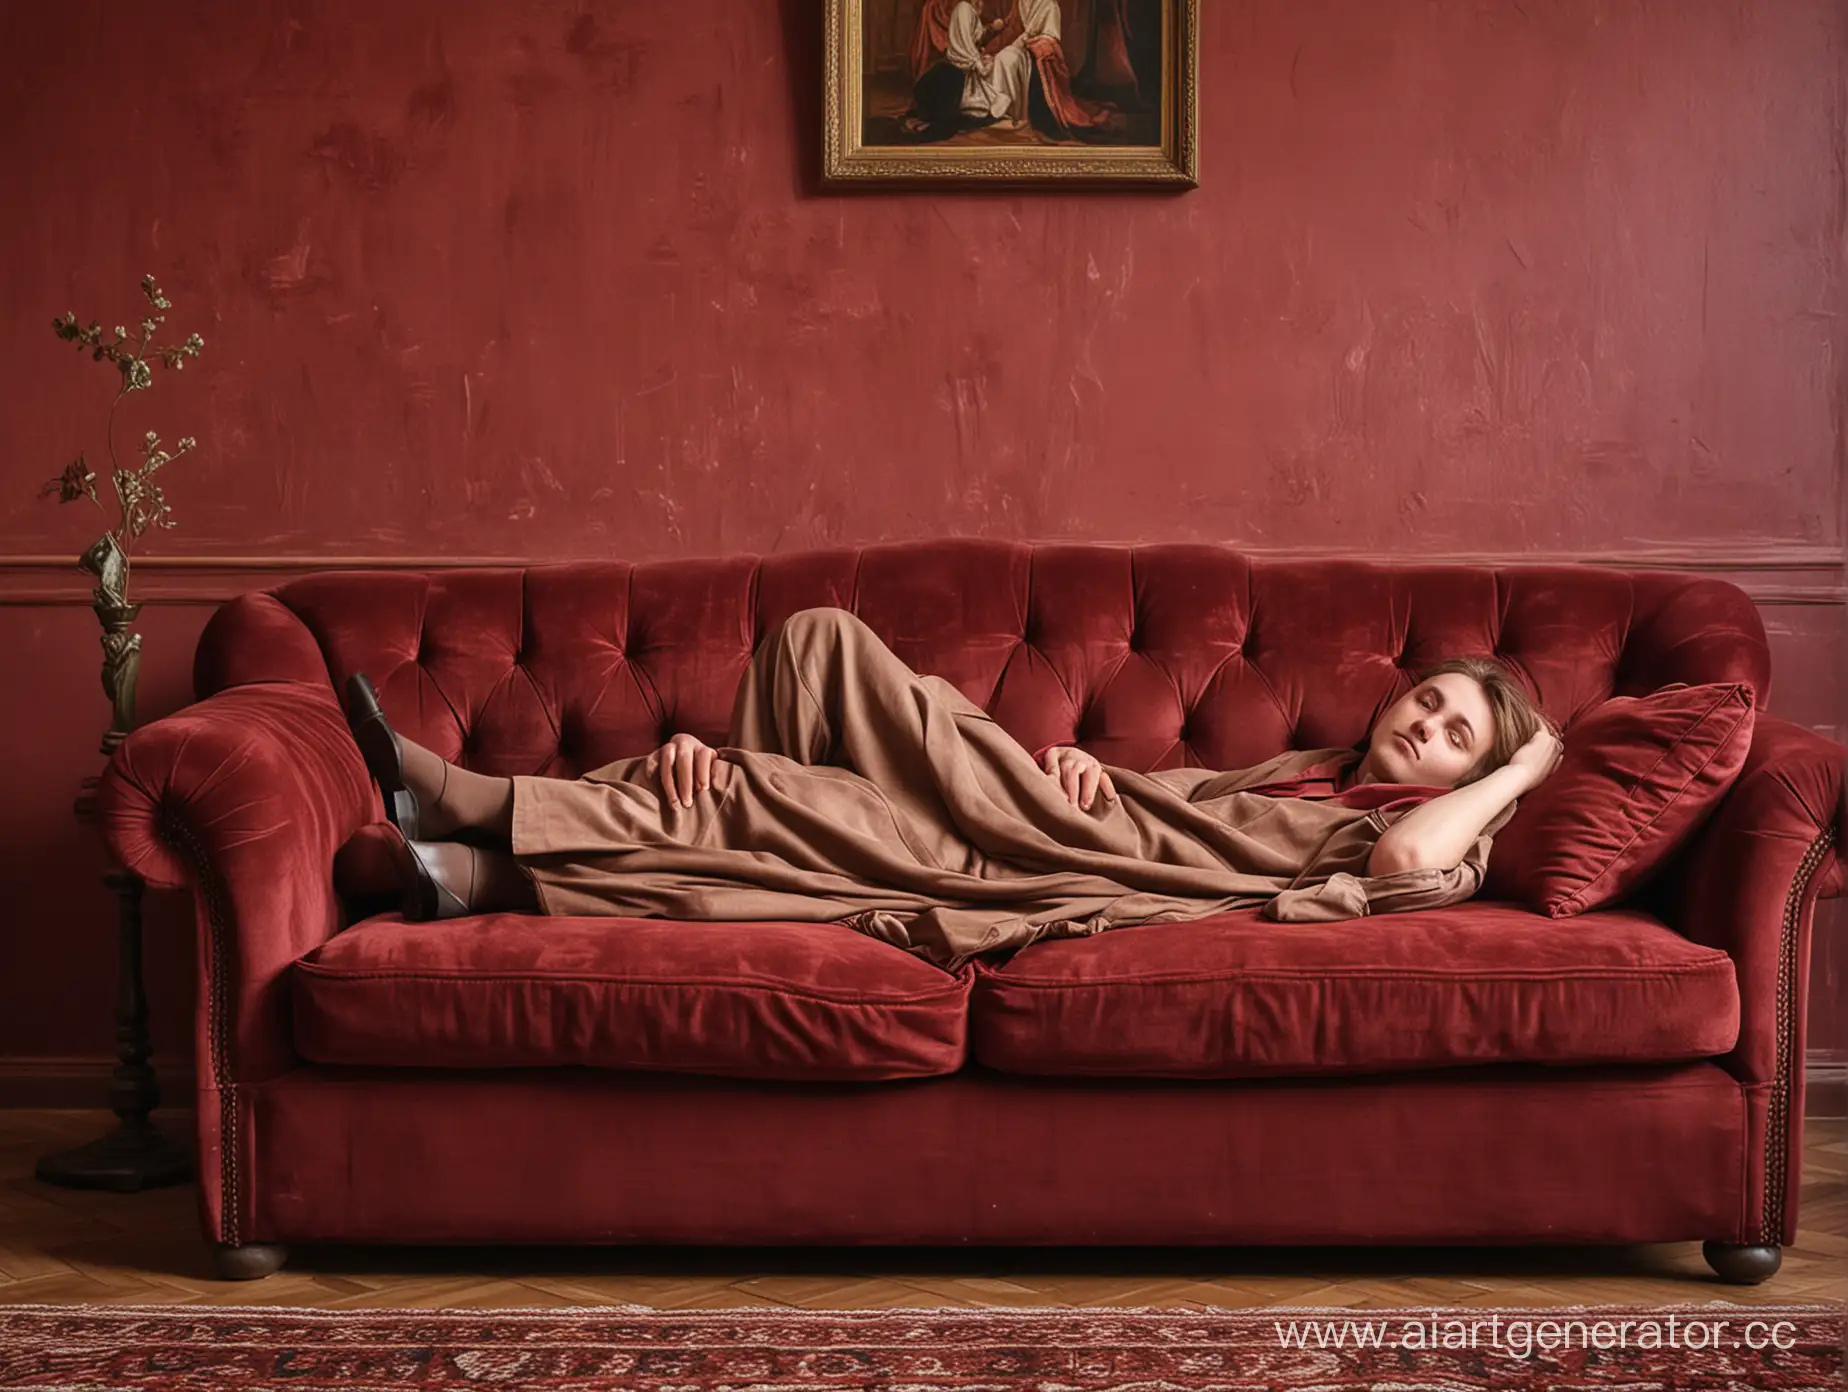 персонаж Илья Обломов из романа А.И. Гончарова "Обломов" лежит на диване в комнате с бордовыми стенами